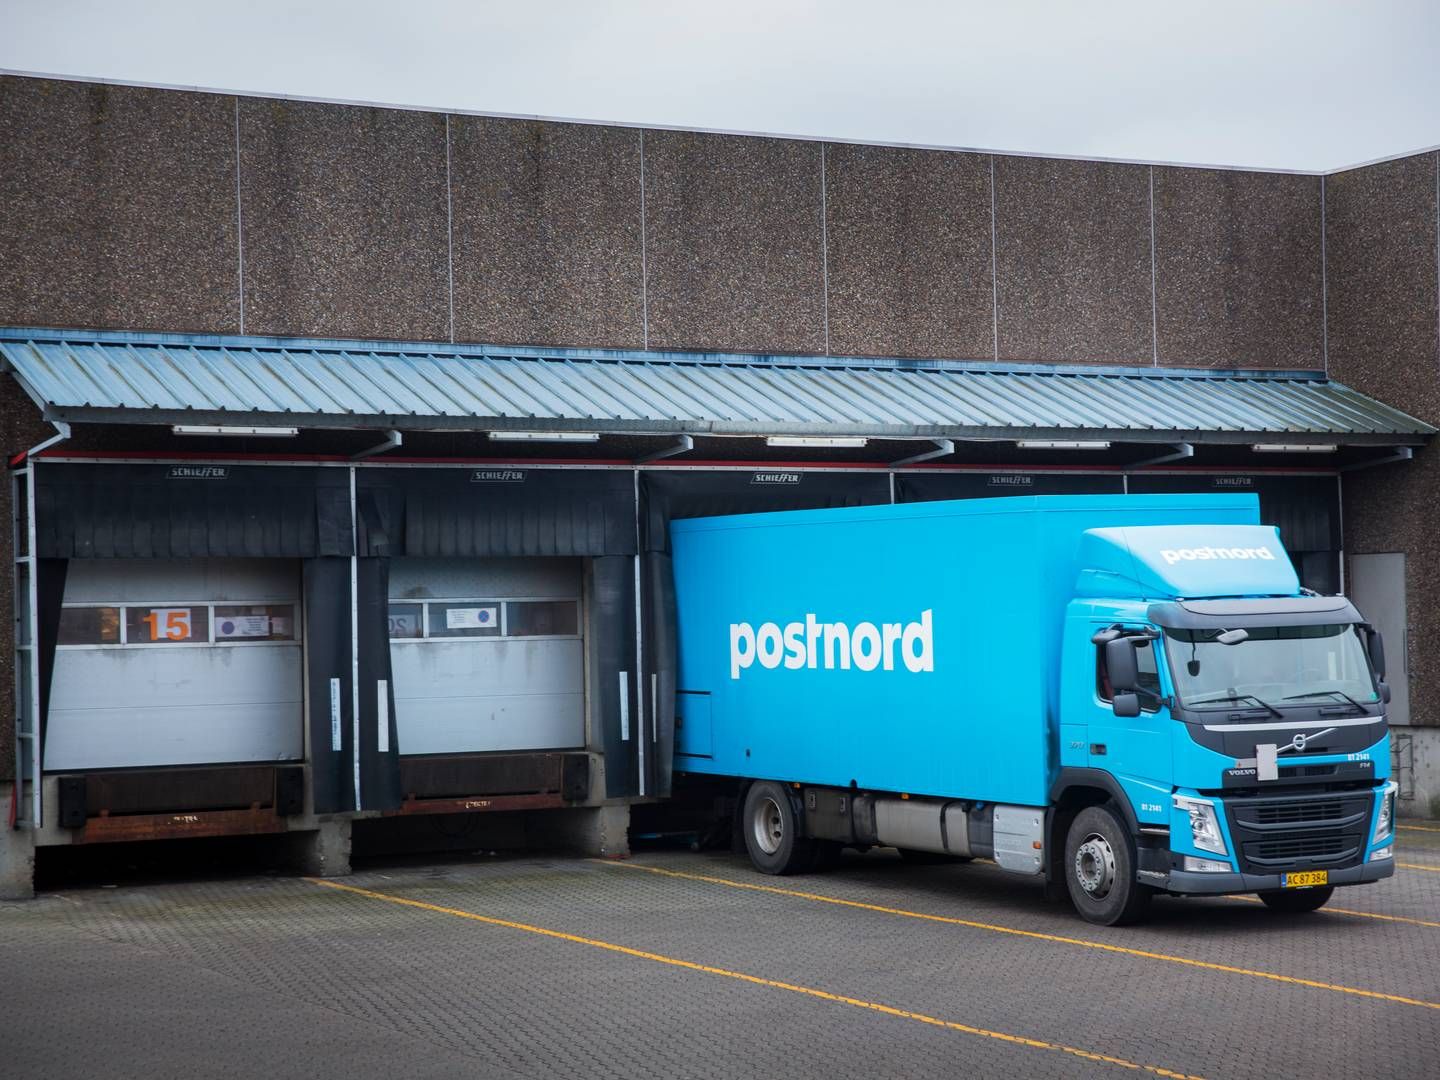 Fremover kan Postnords danske afdeling miste sin statsstøtte, som selskabet har modtaget for at varetage befordringspligten. | Foto: Nørskov Benjamin/Jyllands-Posten/Ritzau Scanpix